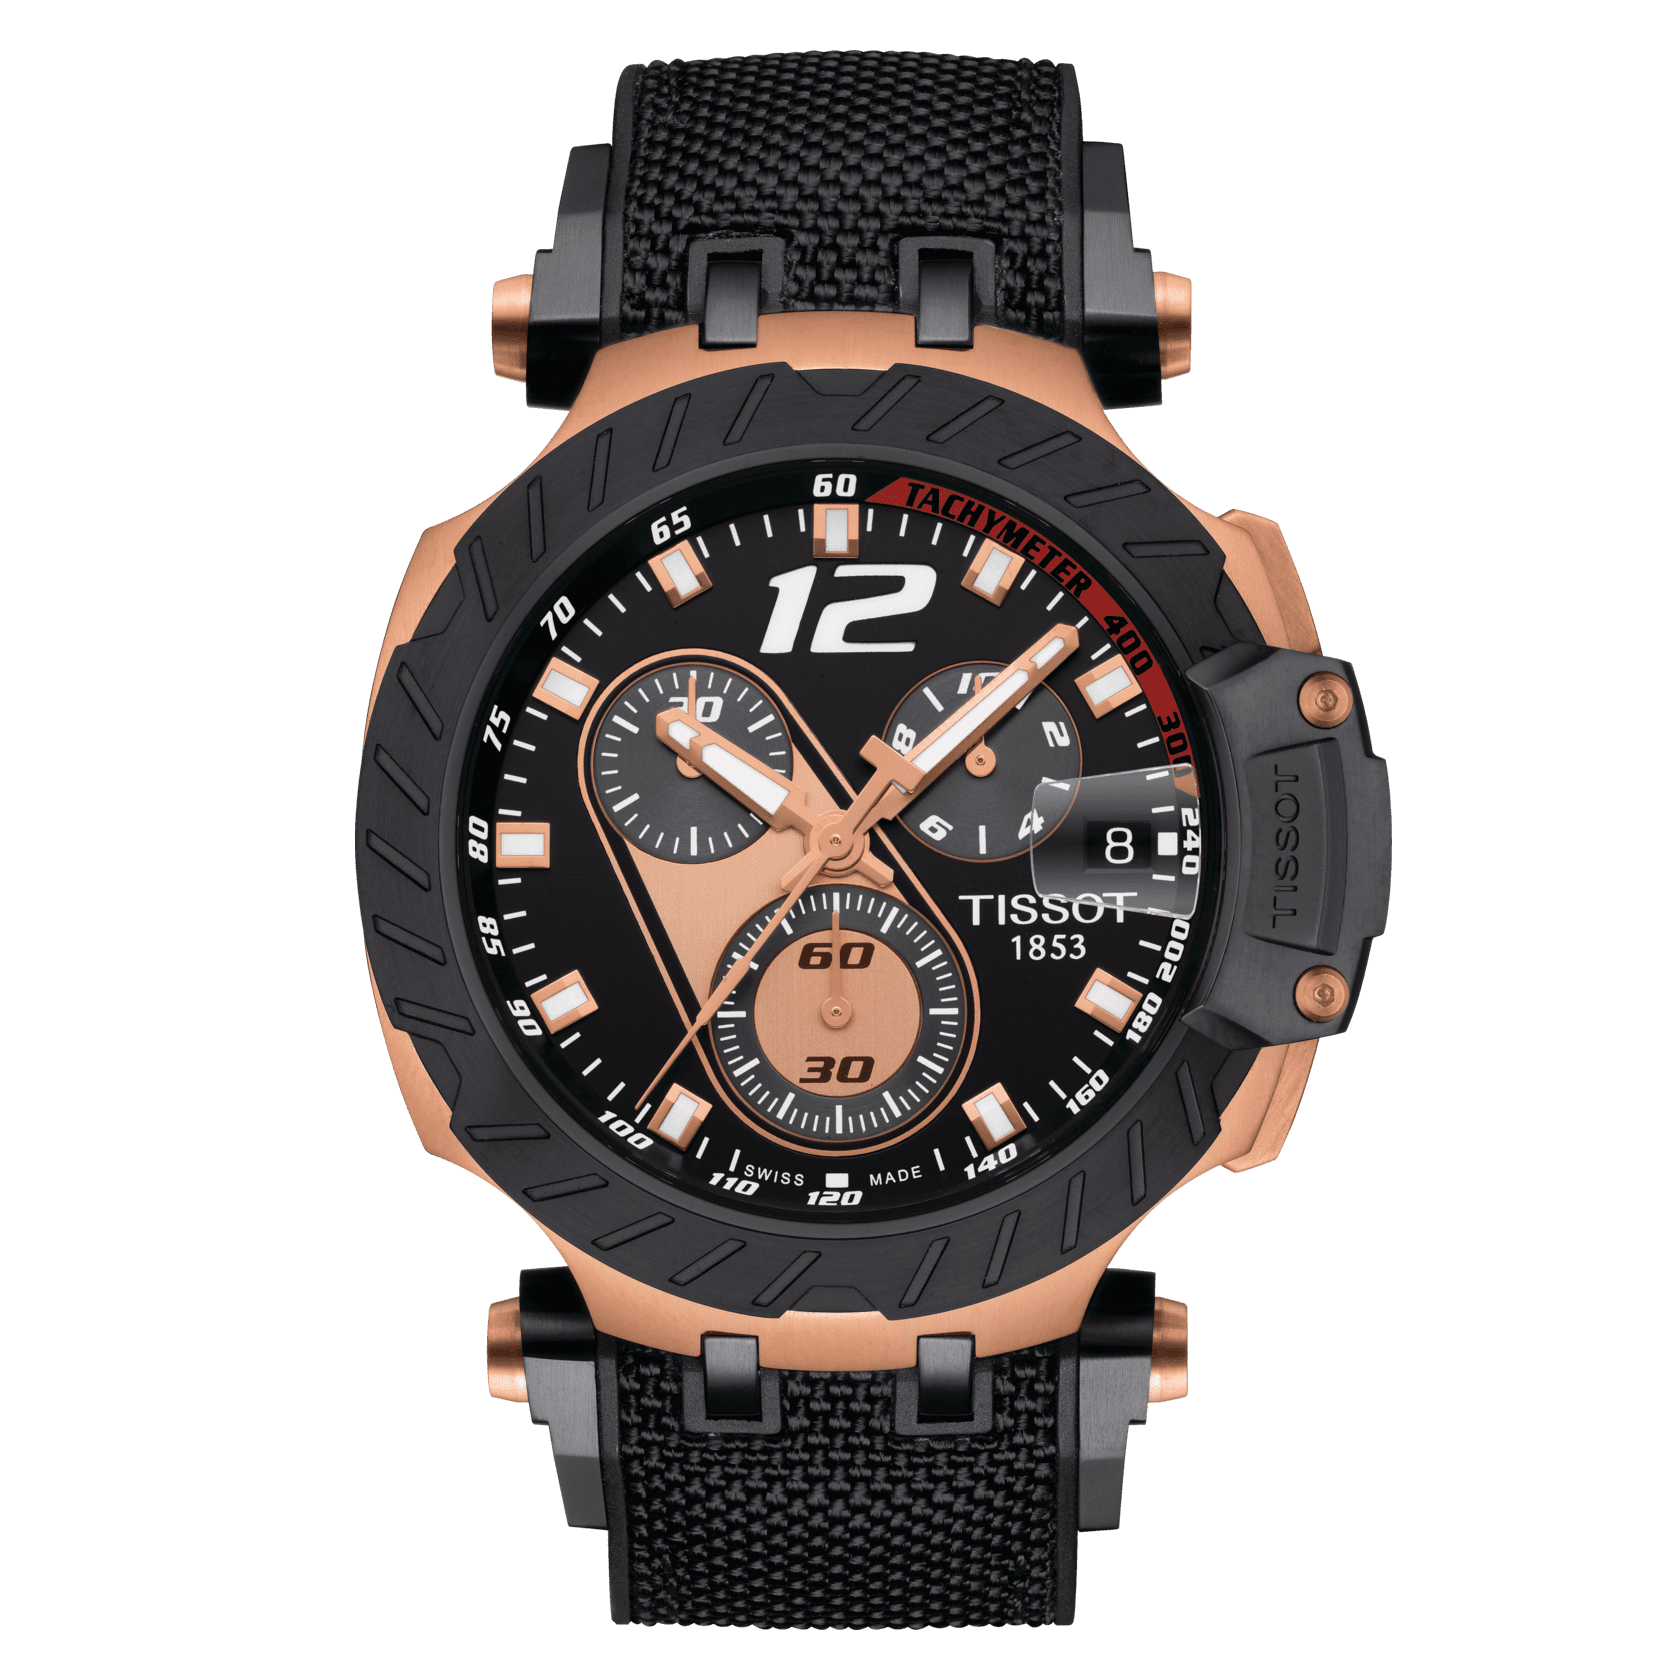 Tissot T-Race MotoGP 2019 Chronograph Limited Edition